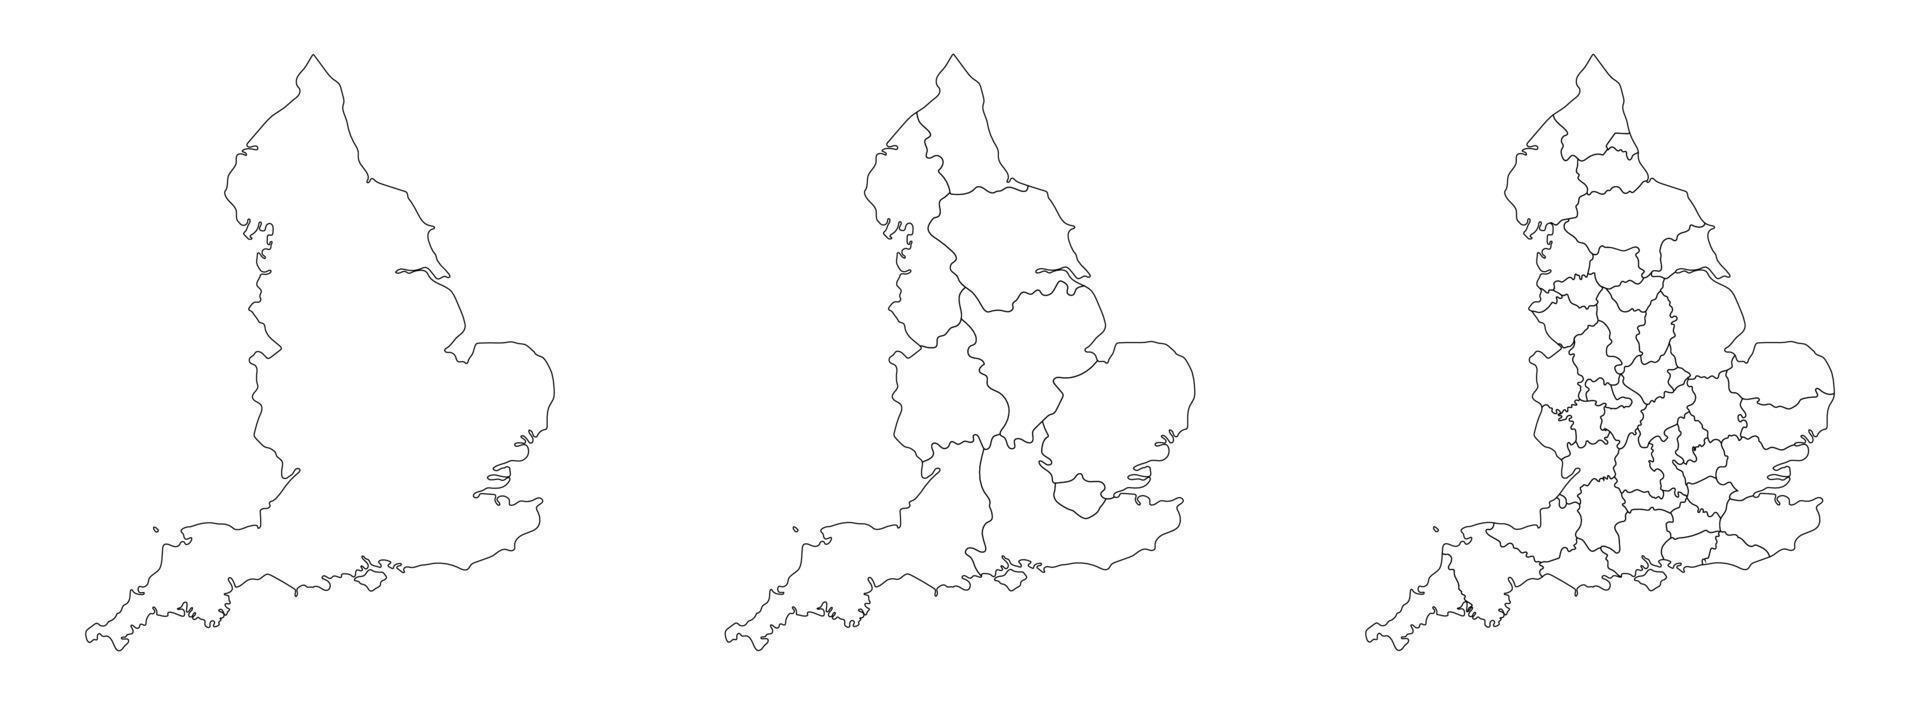 Inglaterra mapa conjunto do Branco preto esboço e administrações regiões mapa vetor